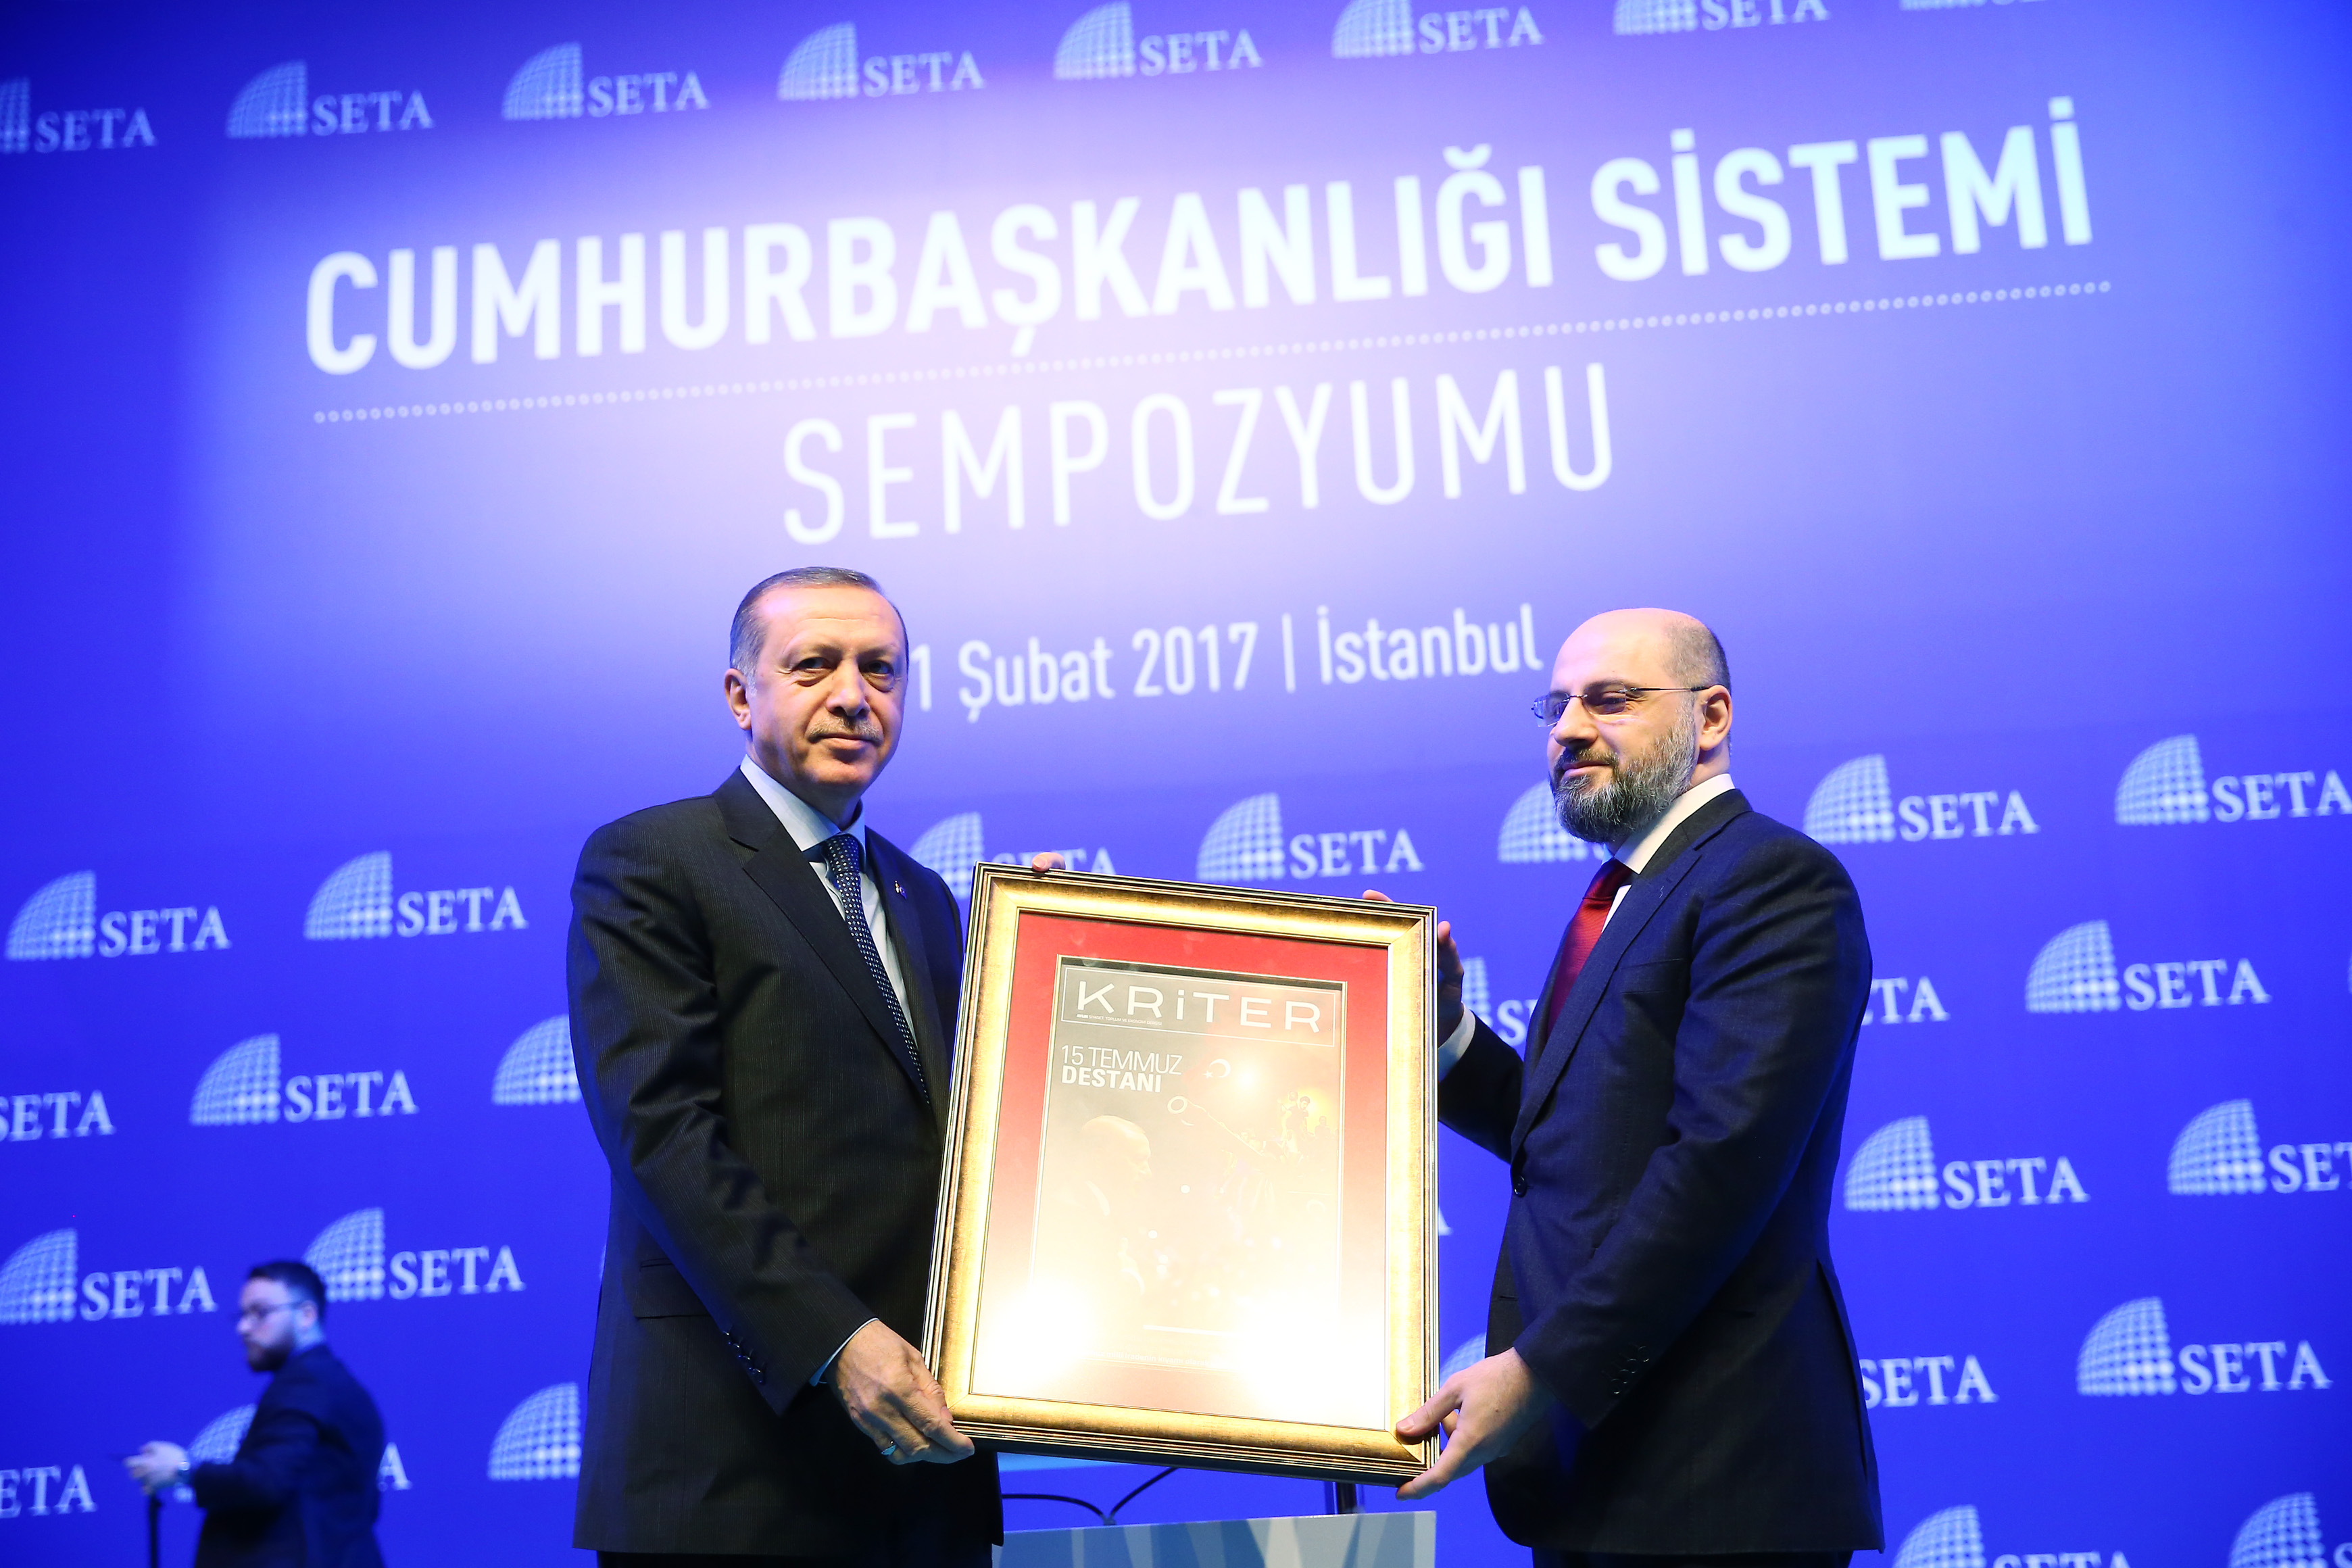 Cumhurbaşkanı Erdoğan'a Kriter tablosu hediye edildi